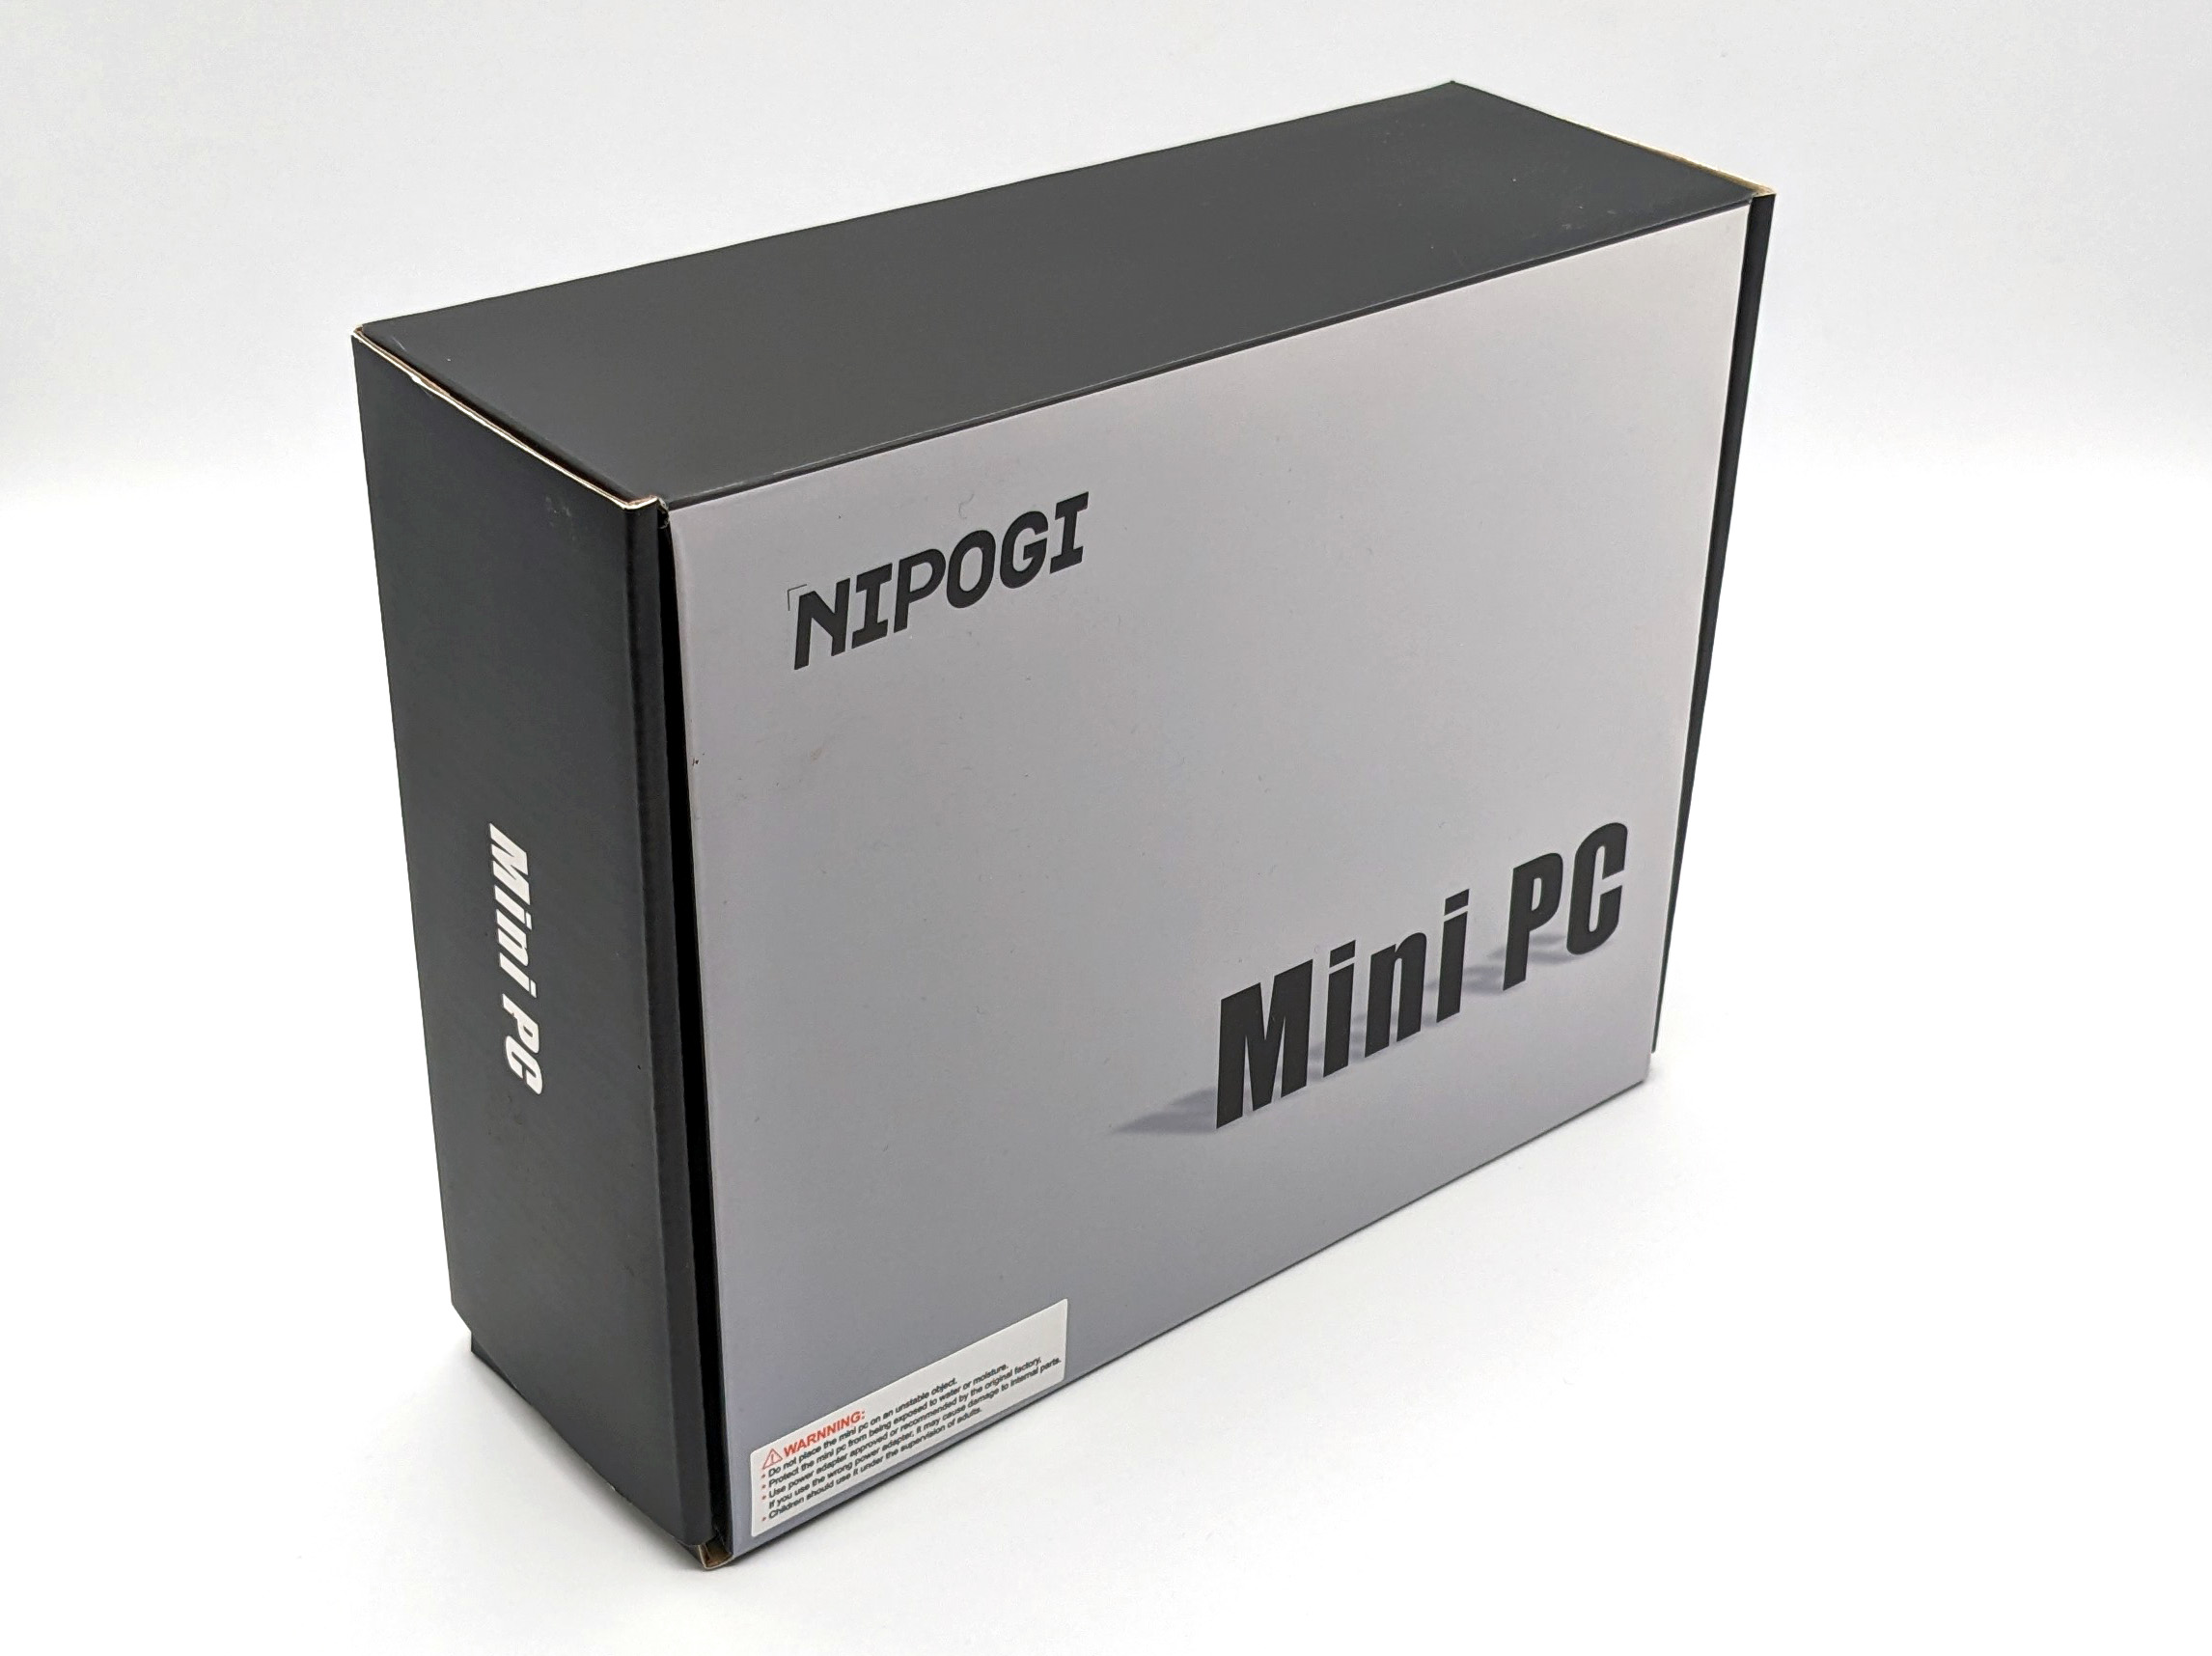 NiPoGi AK2 Plus Mini PC N100 Quick Unboxing/Review Video 